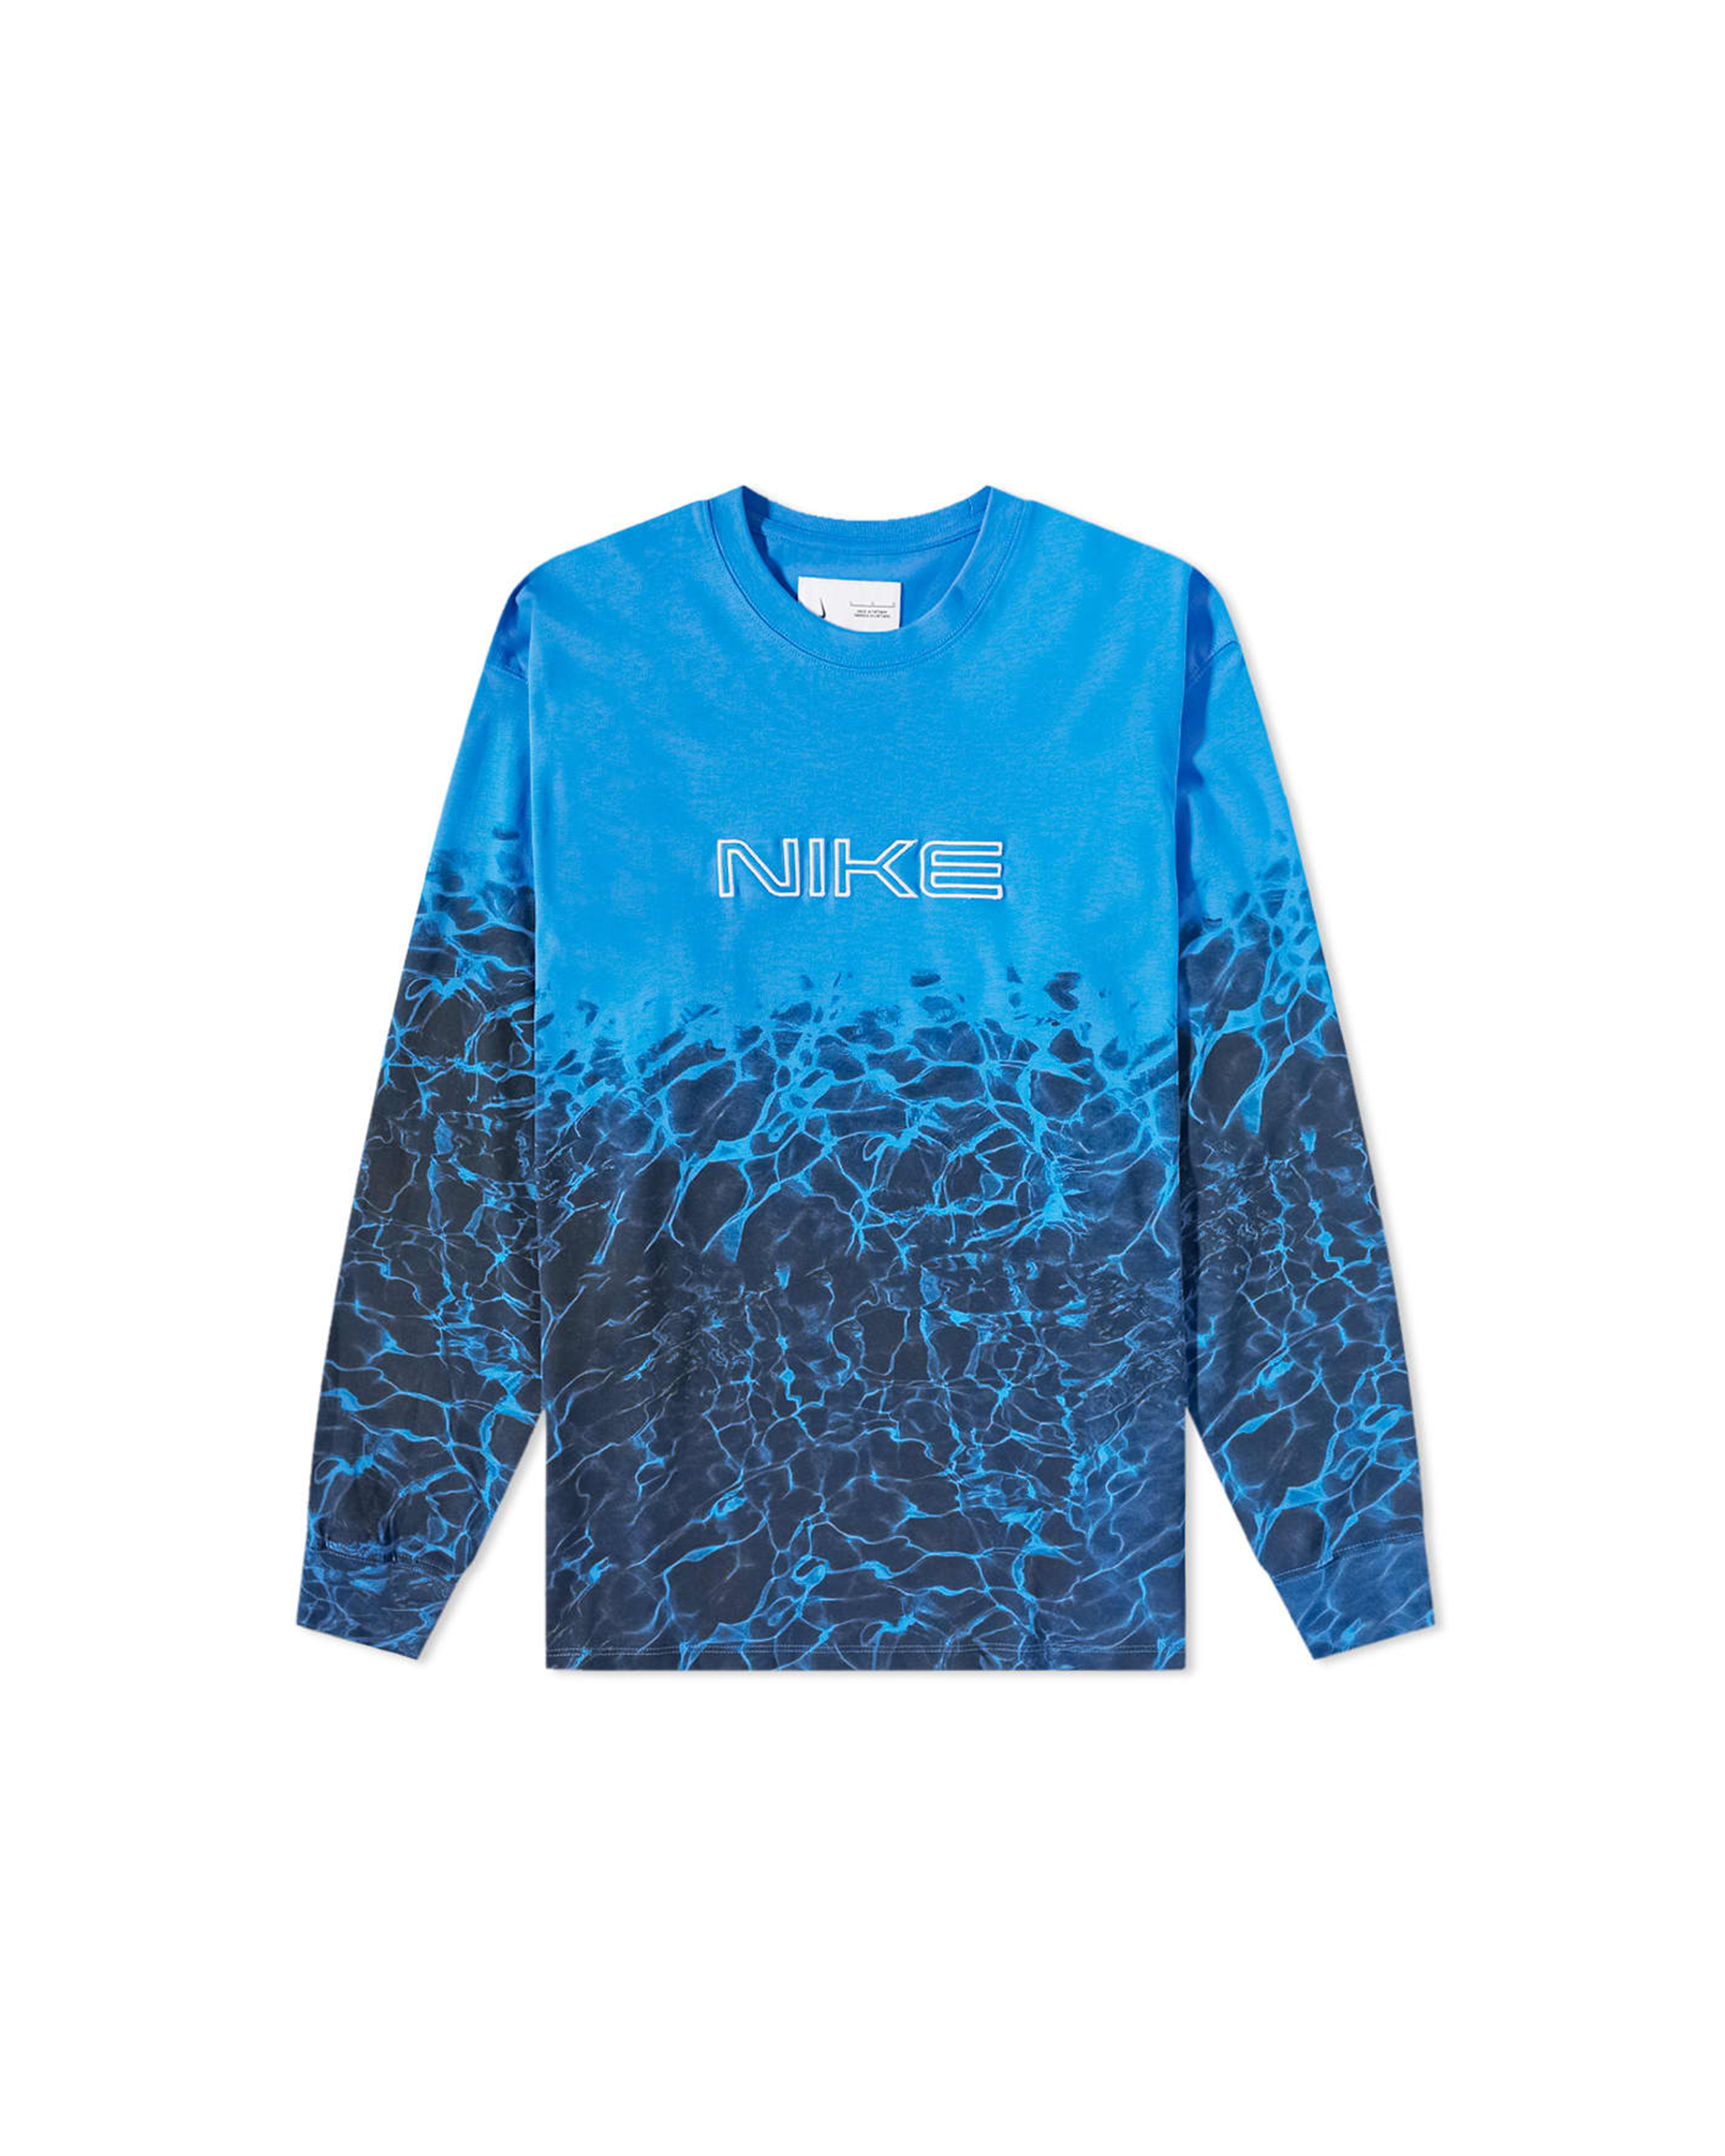 Kukini L/S T-shirt - Signal Blue / Black / White